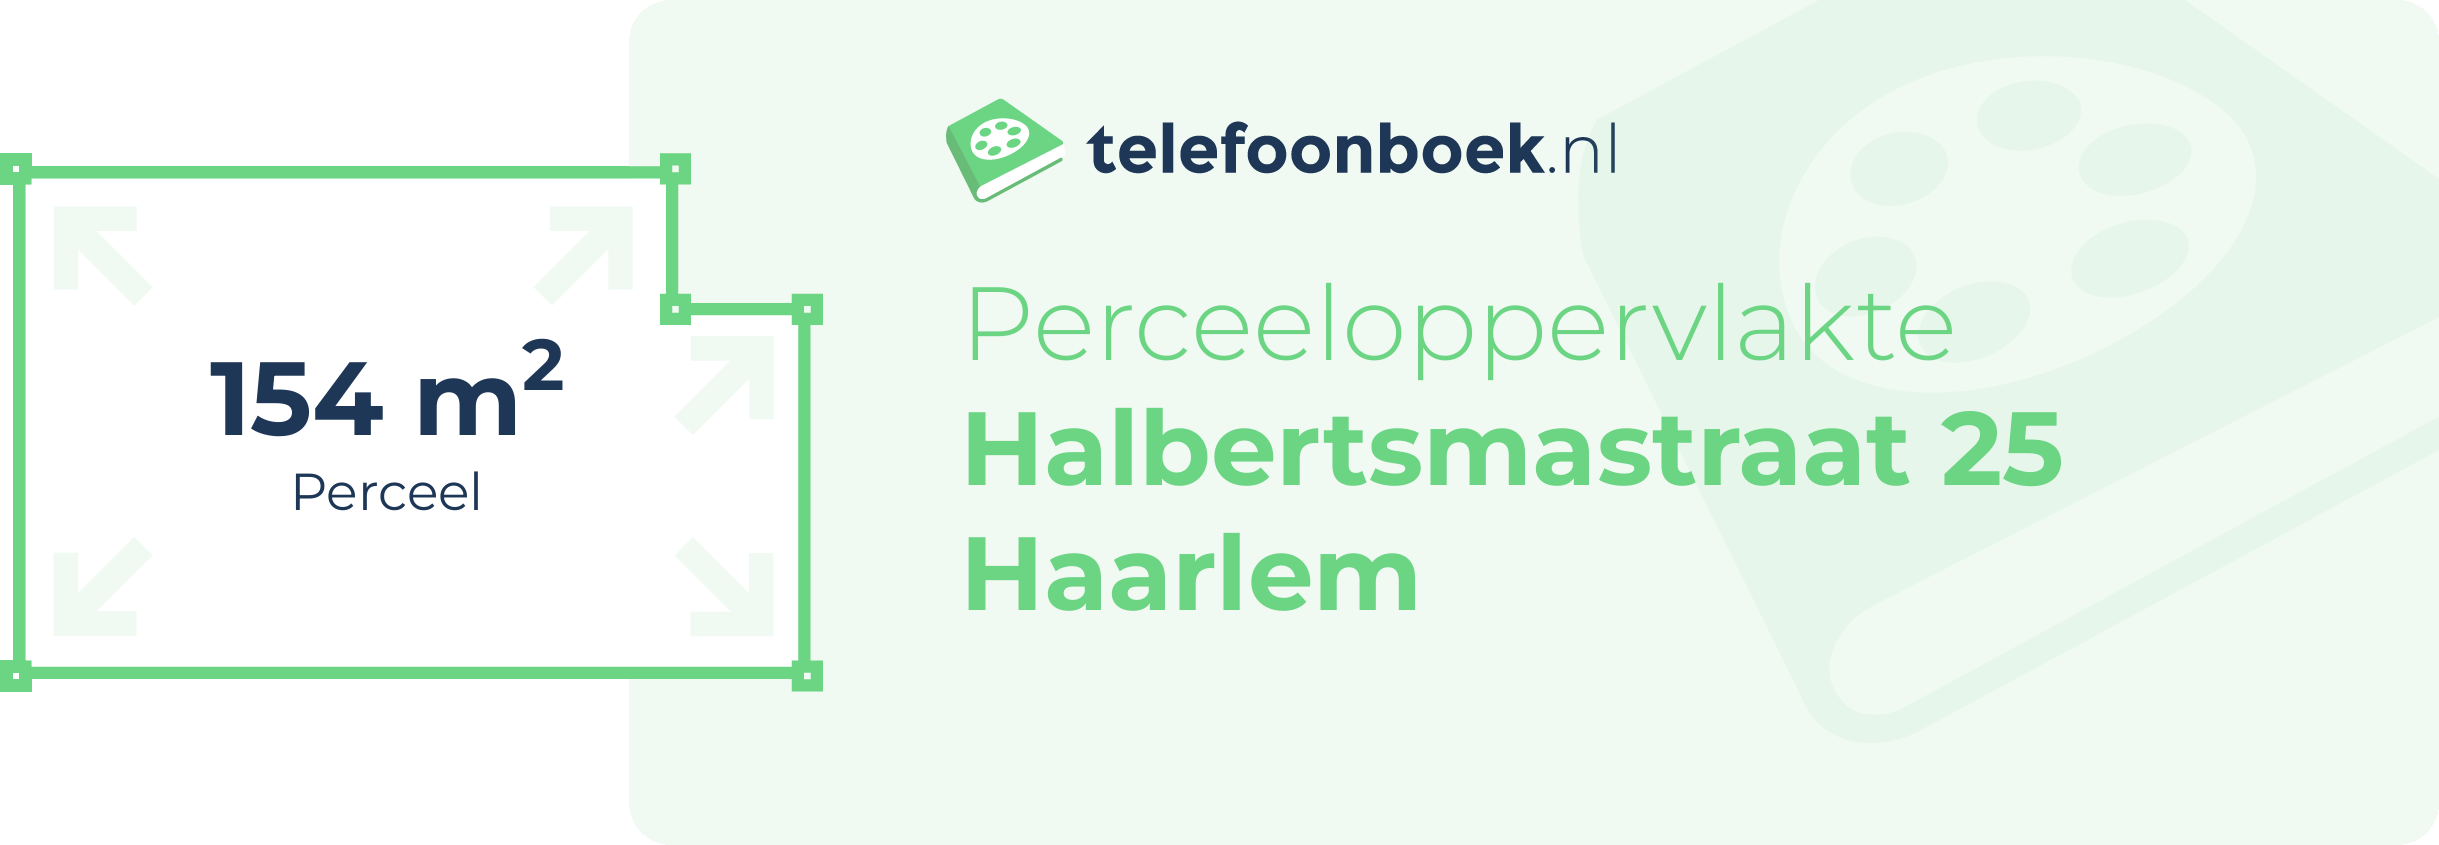 Perceeloppervlakte Halbertsmastraat 25 Haarlem